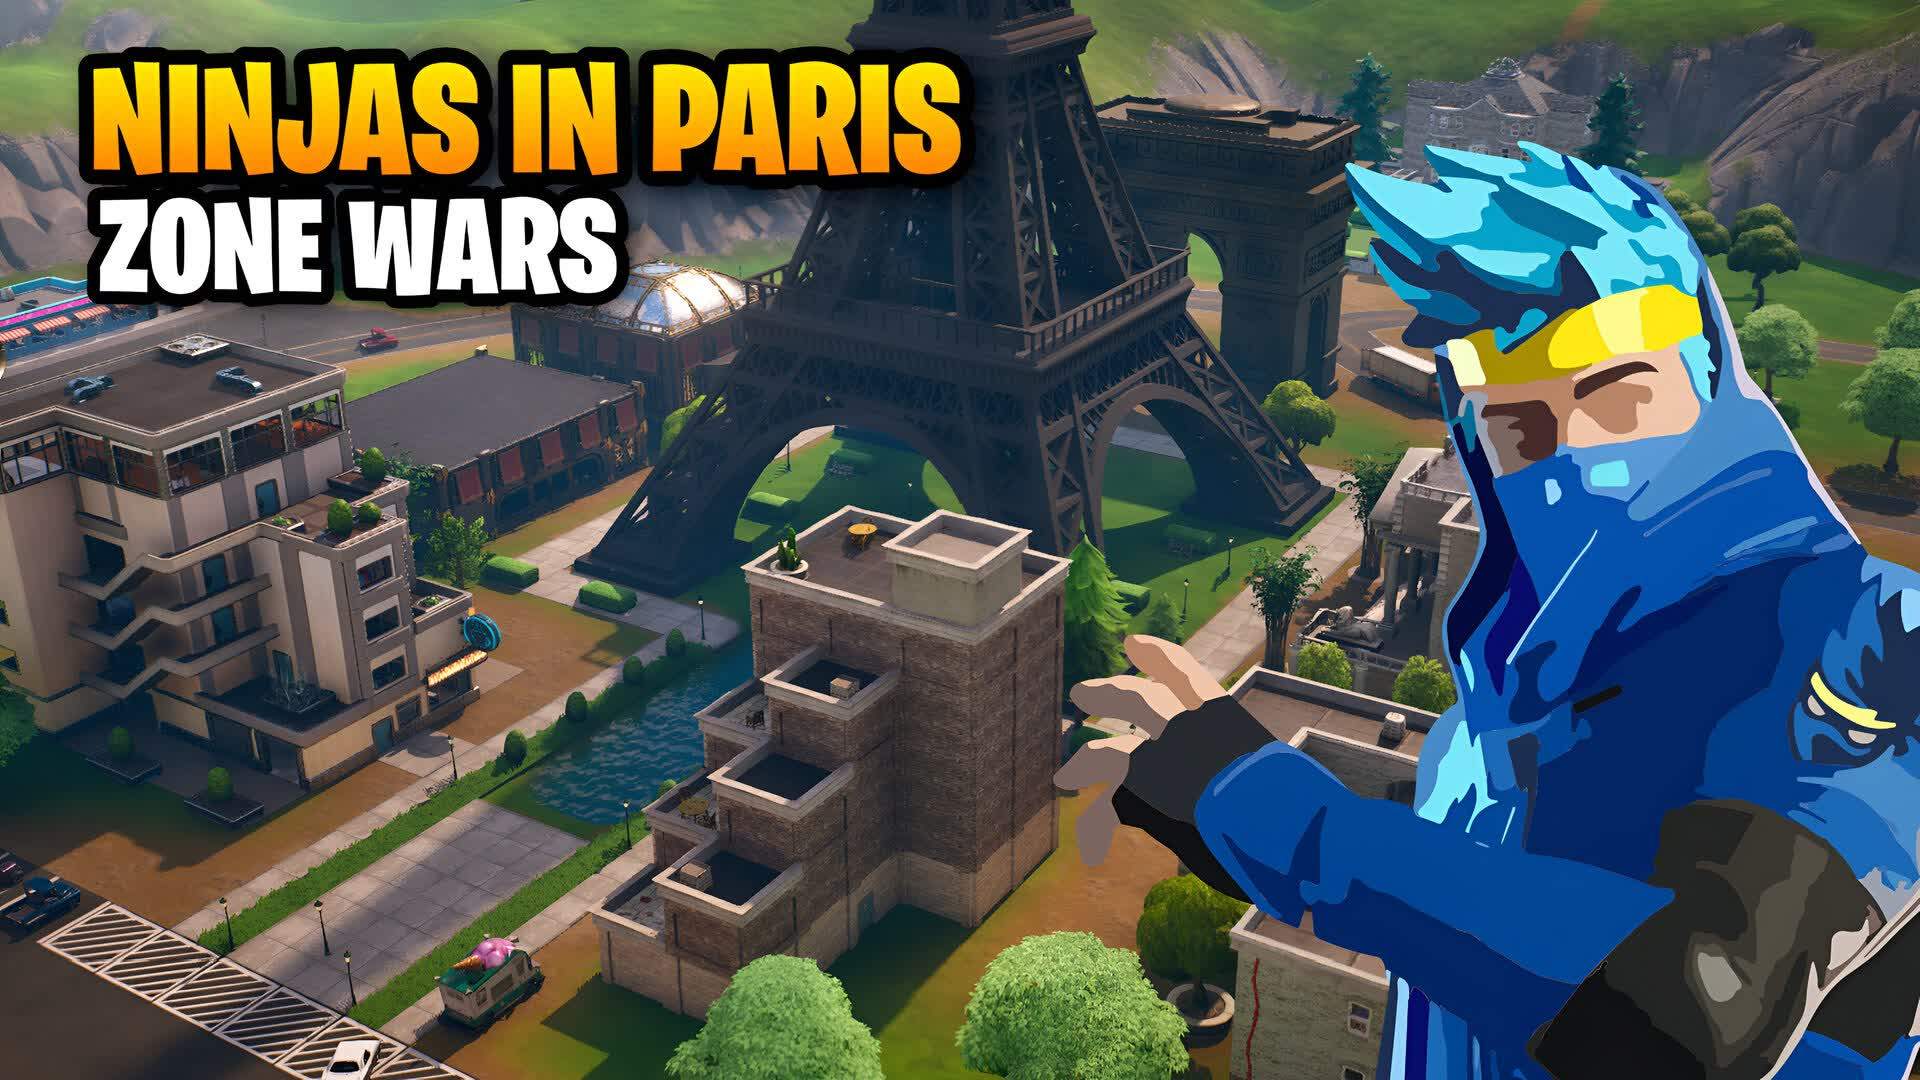 NINJAS IN PARIS ZONE WARS 🗼